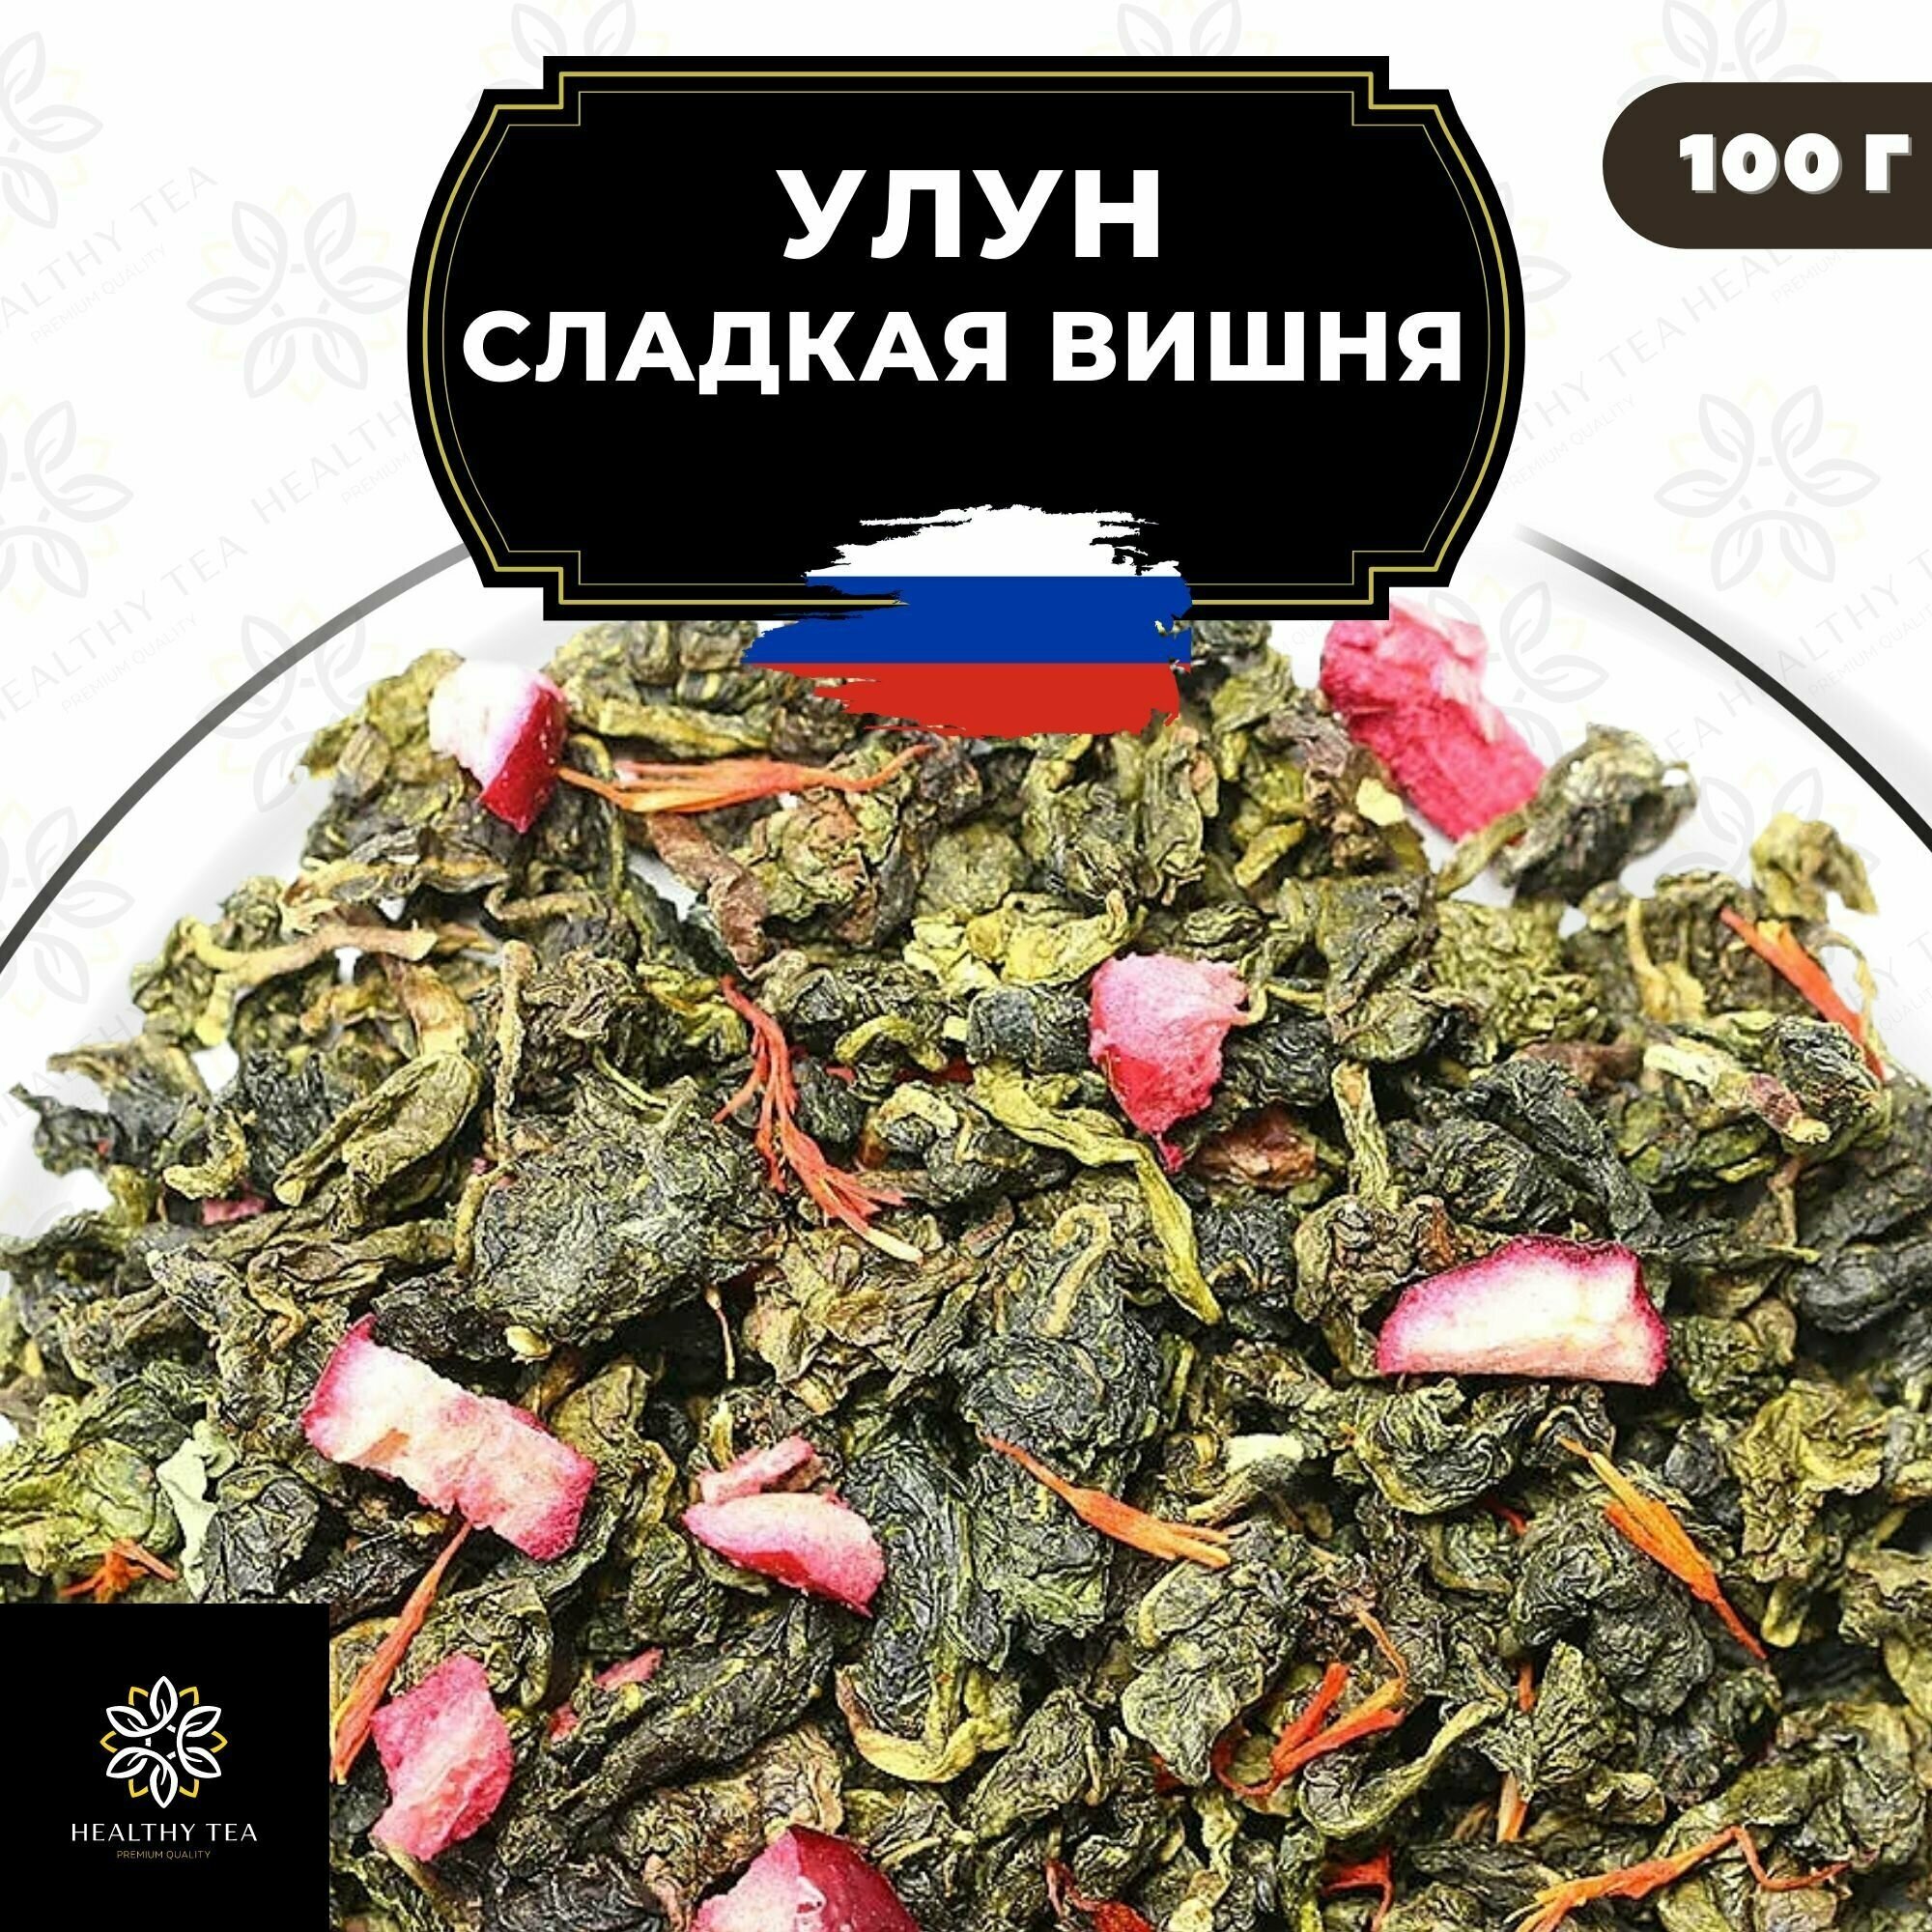 Китайский чай Улун Сладкая вишня с клюквой Полезный чай / HEALTHY TEA, 100 г